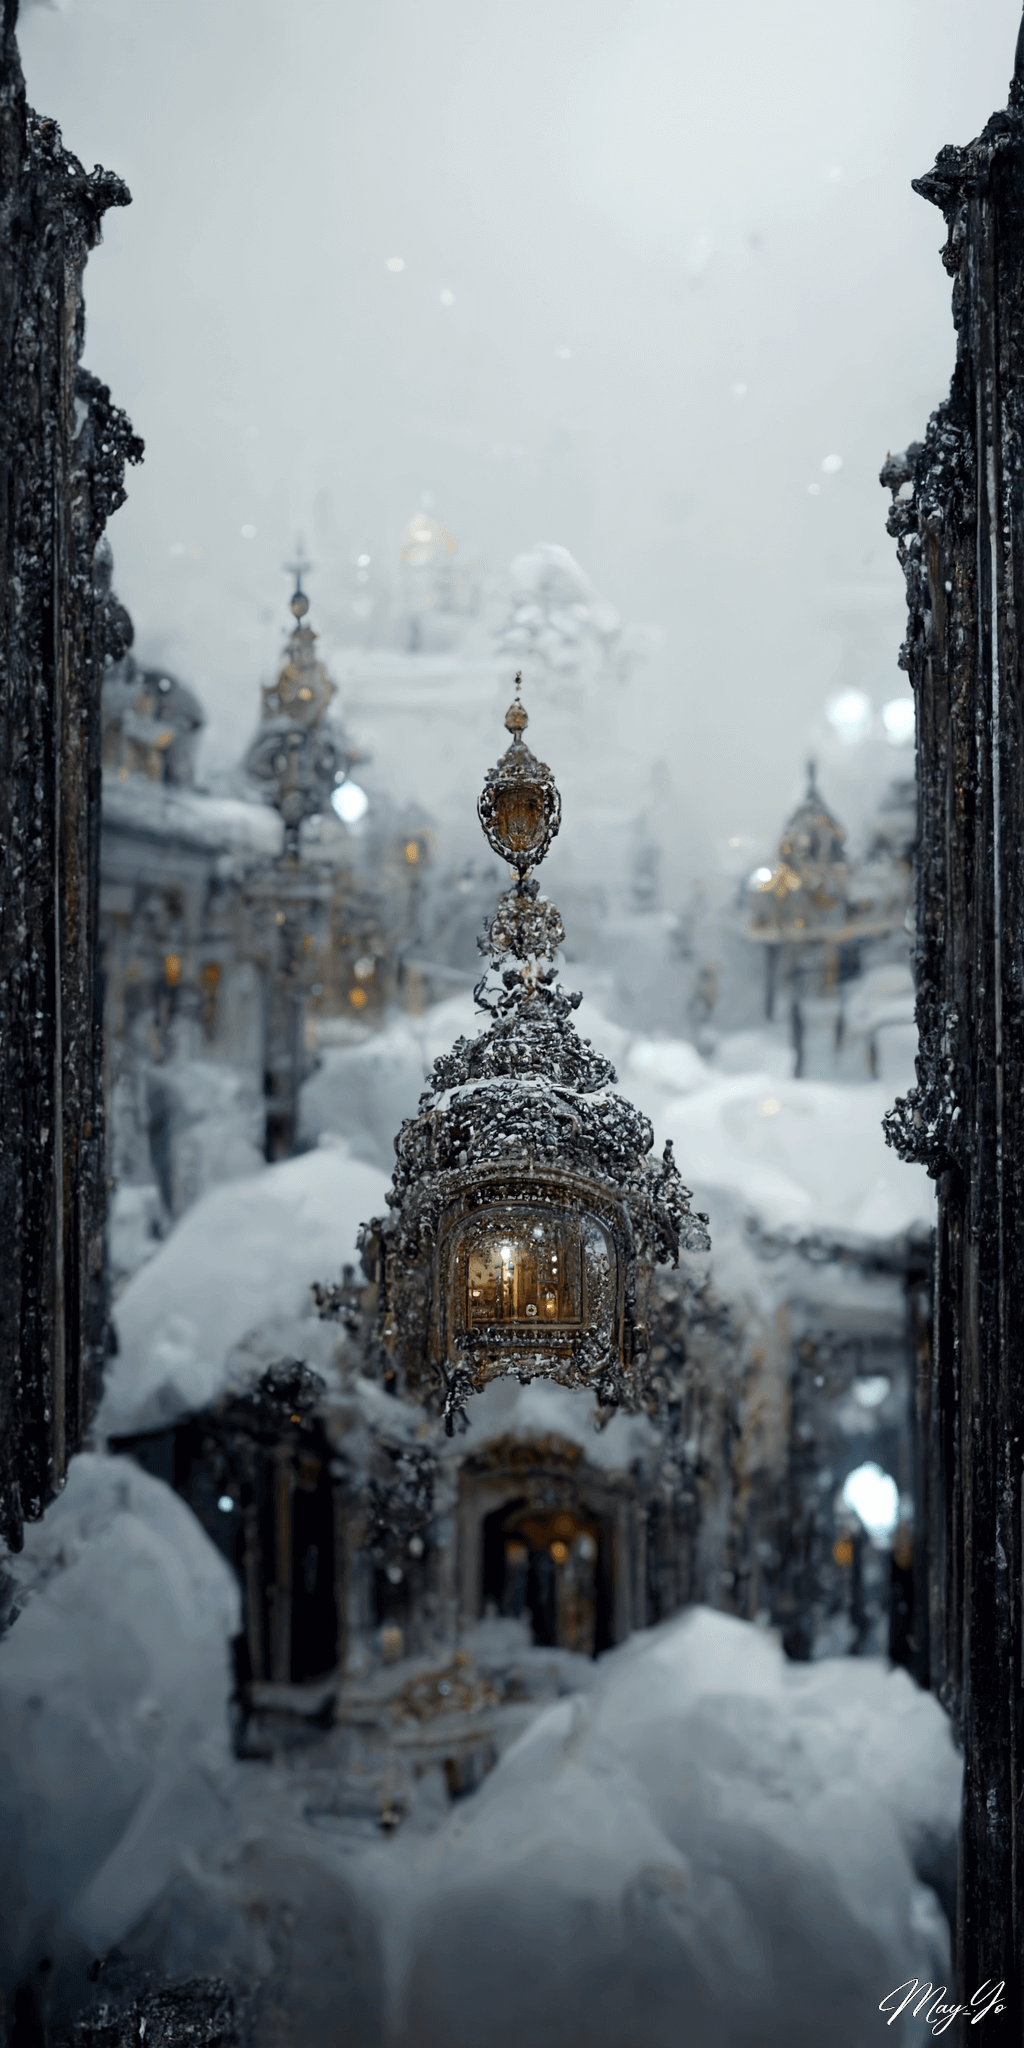 深い雪に覆われた魔法の王宮の壁紙イラスト 雪に埋め尽くされたお城の待受 AIイラスト待受 縦長画像 snow magical castle illustration frost palace